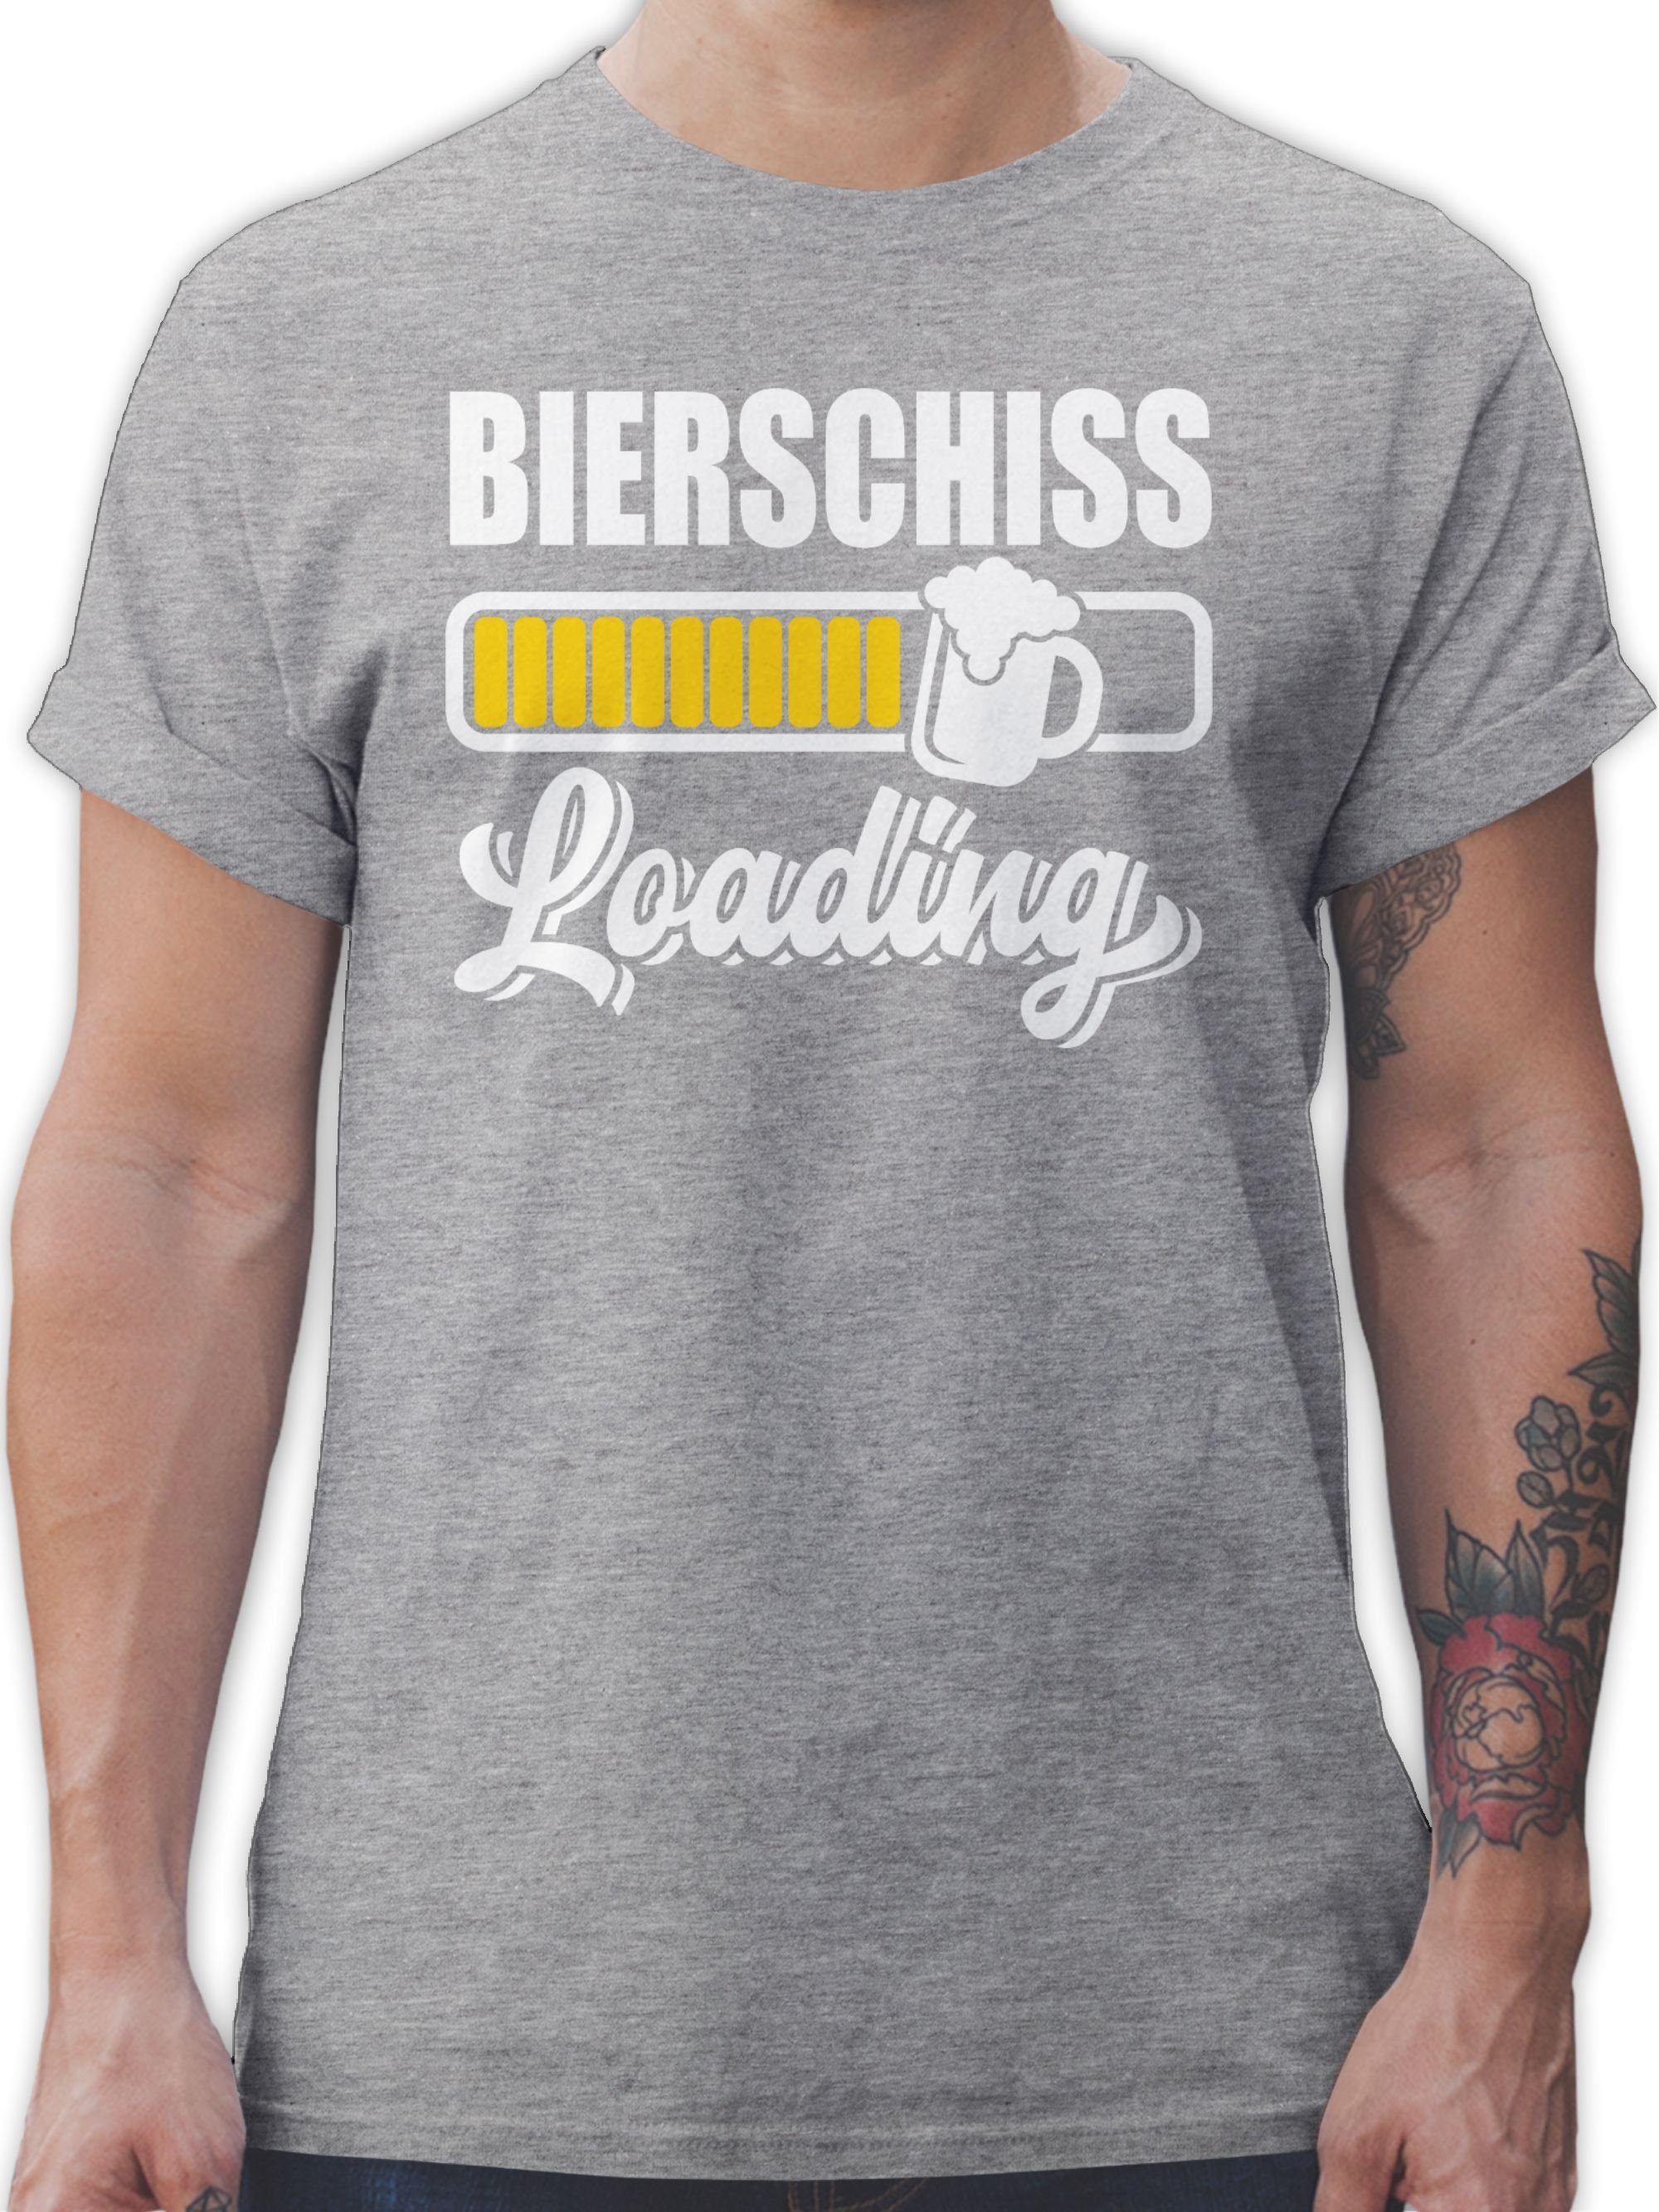 Bierschiss 2 loading Shirtracer meliert T-Shirt Outfit Karneval Grau